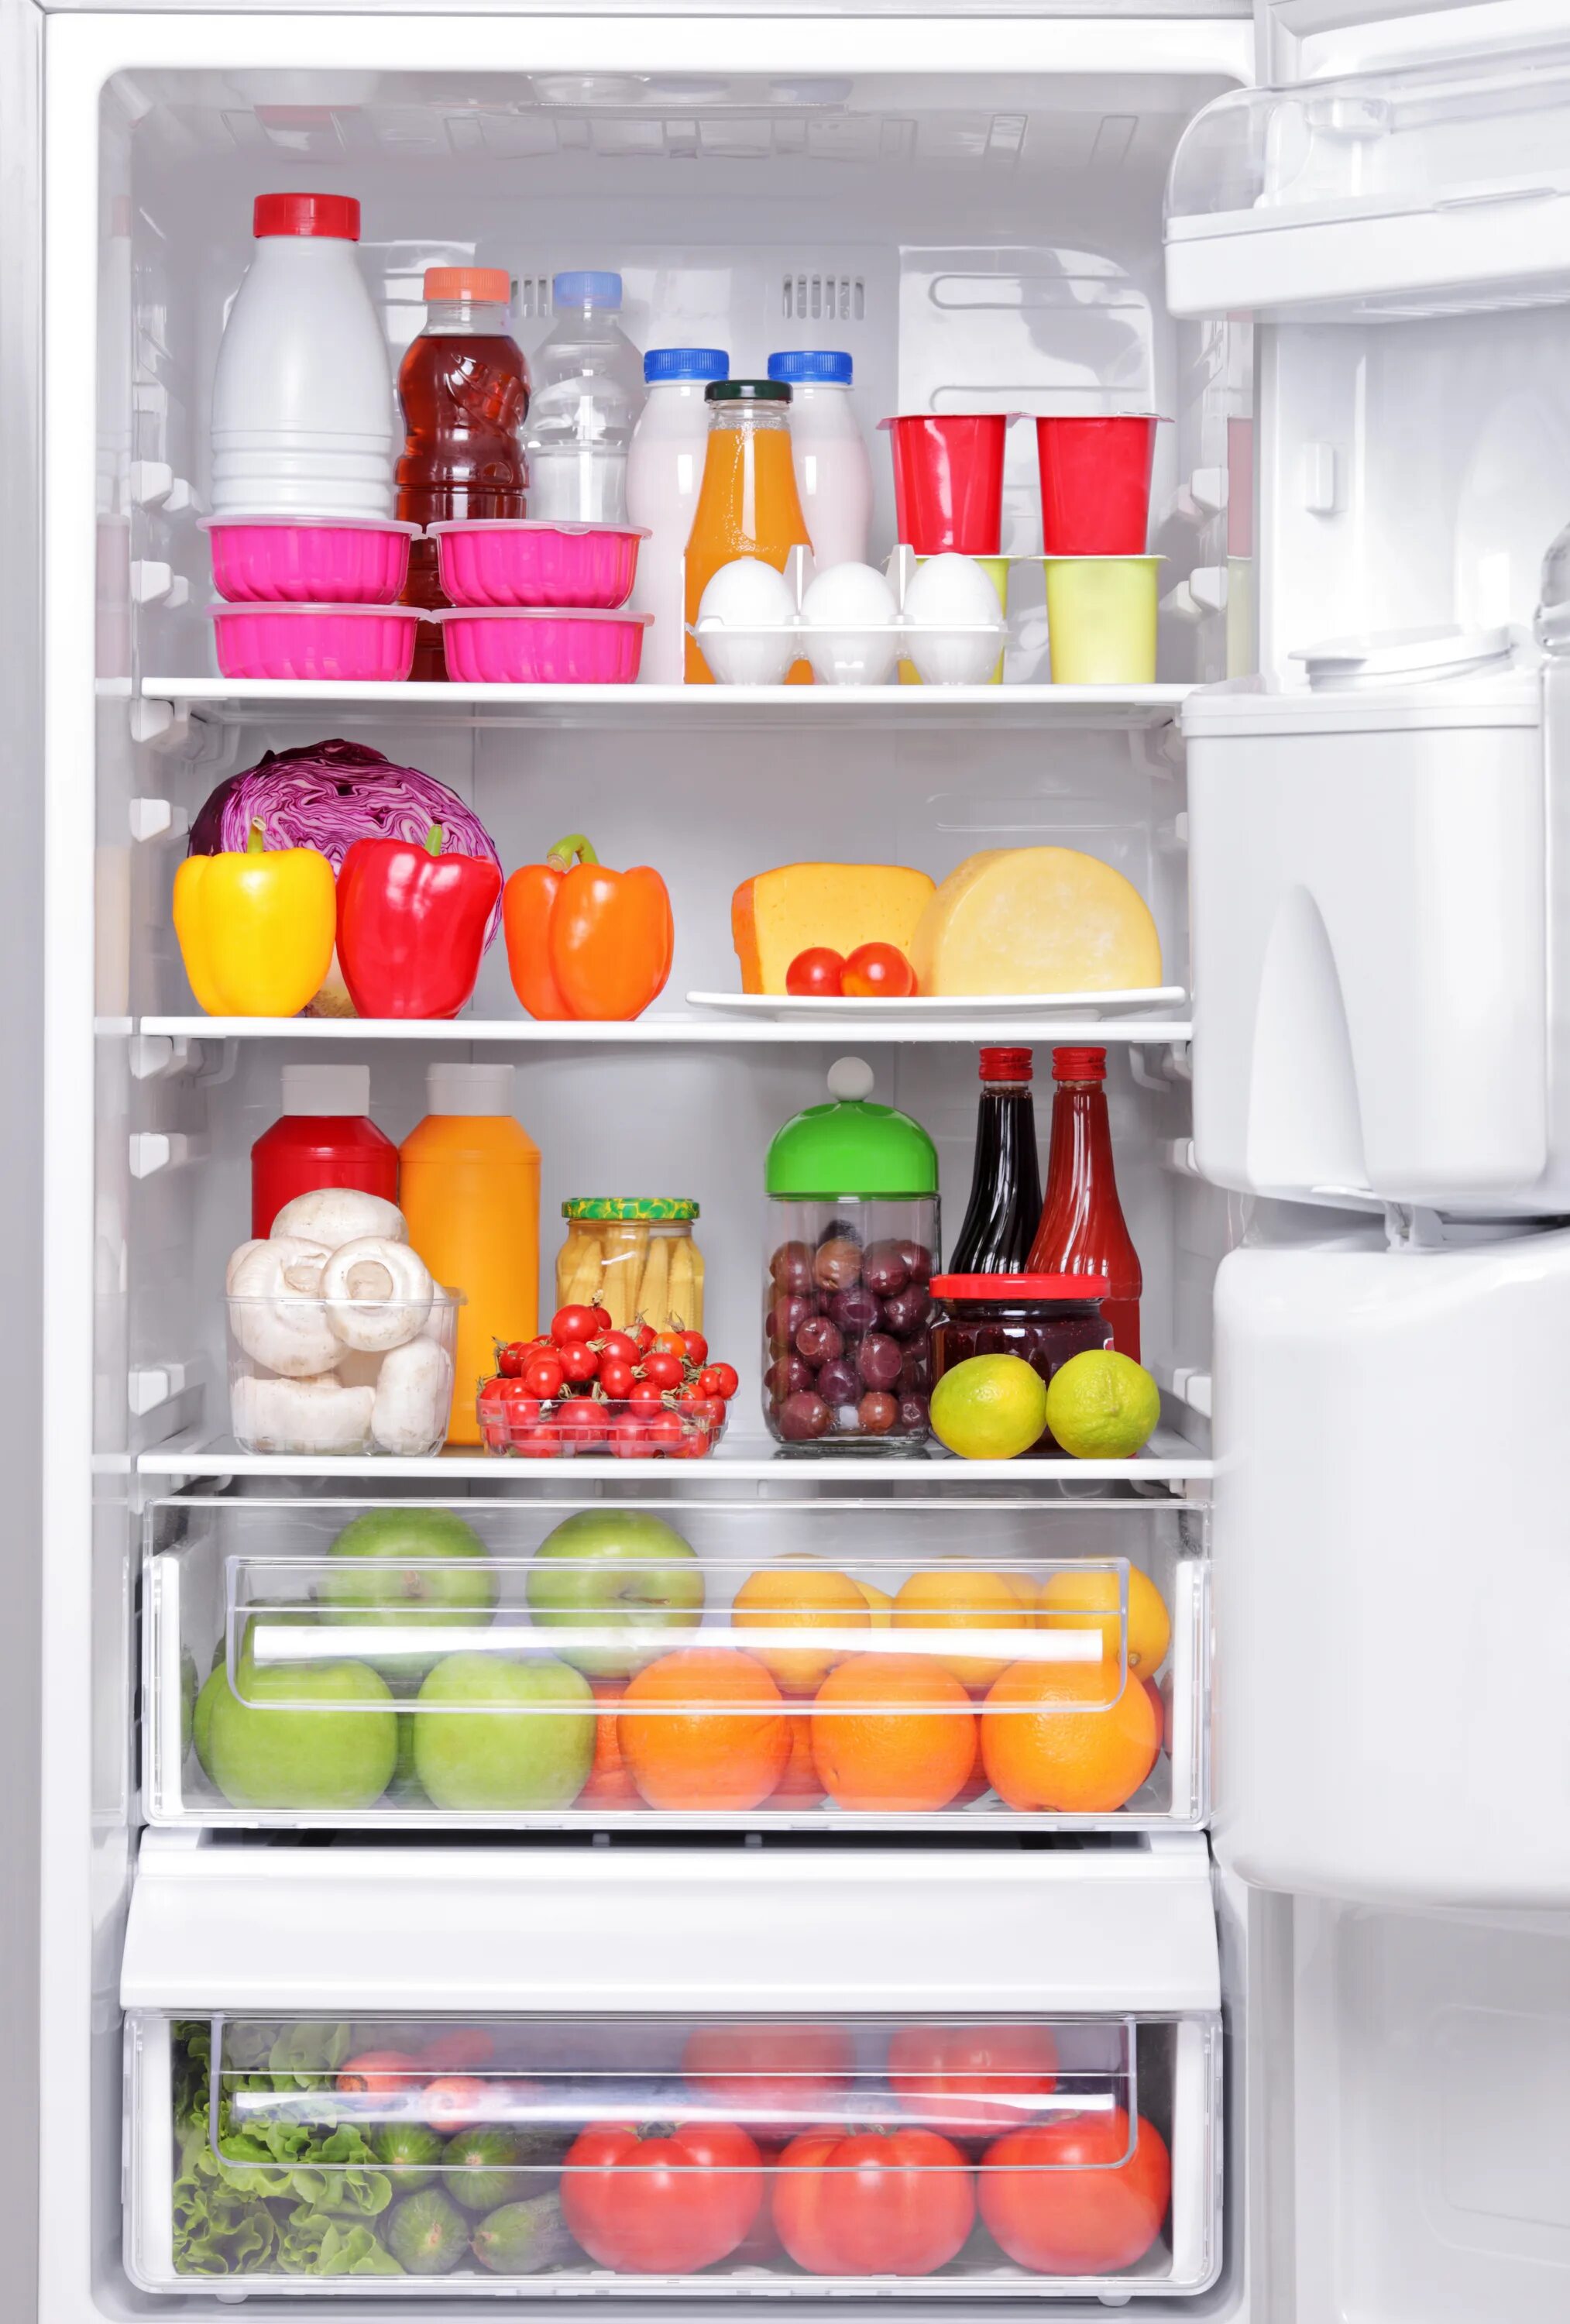 Холодильник через 1. Холодильник с продуктами. Холодильник с едой. Полный холодильник продуктов. Открытый холодильник.